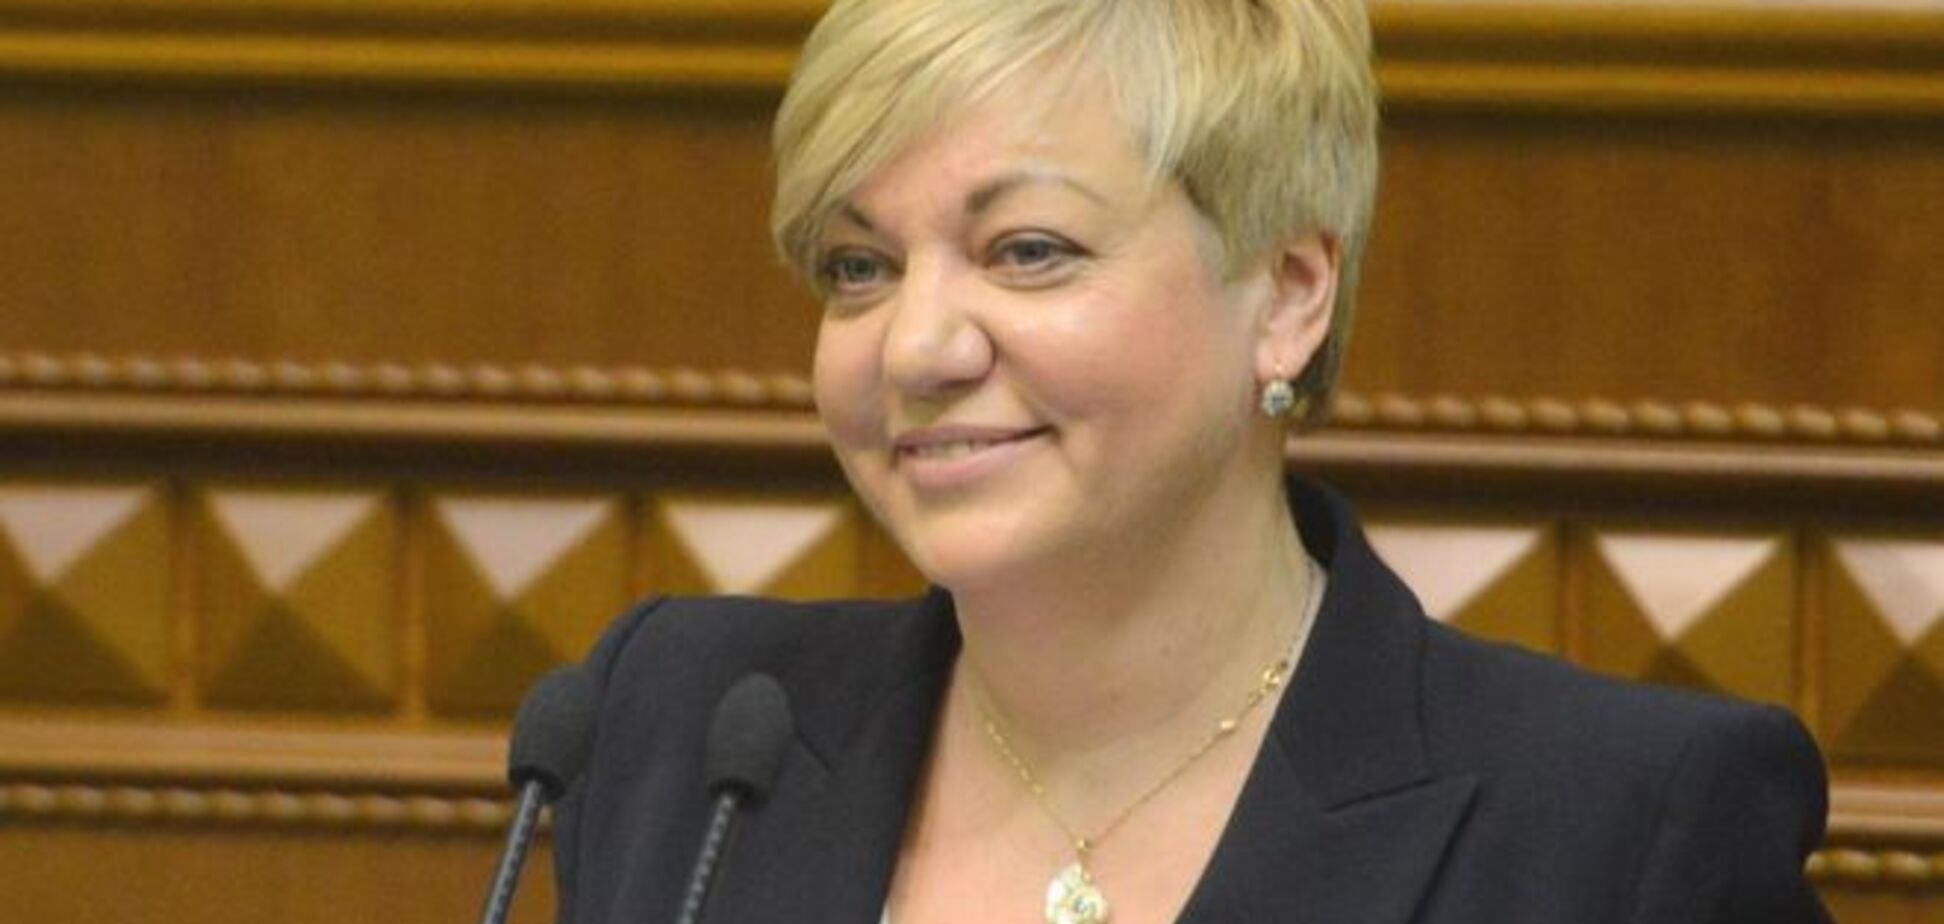 Гонтарева в 2014 году получила более 26 млн грн дохода